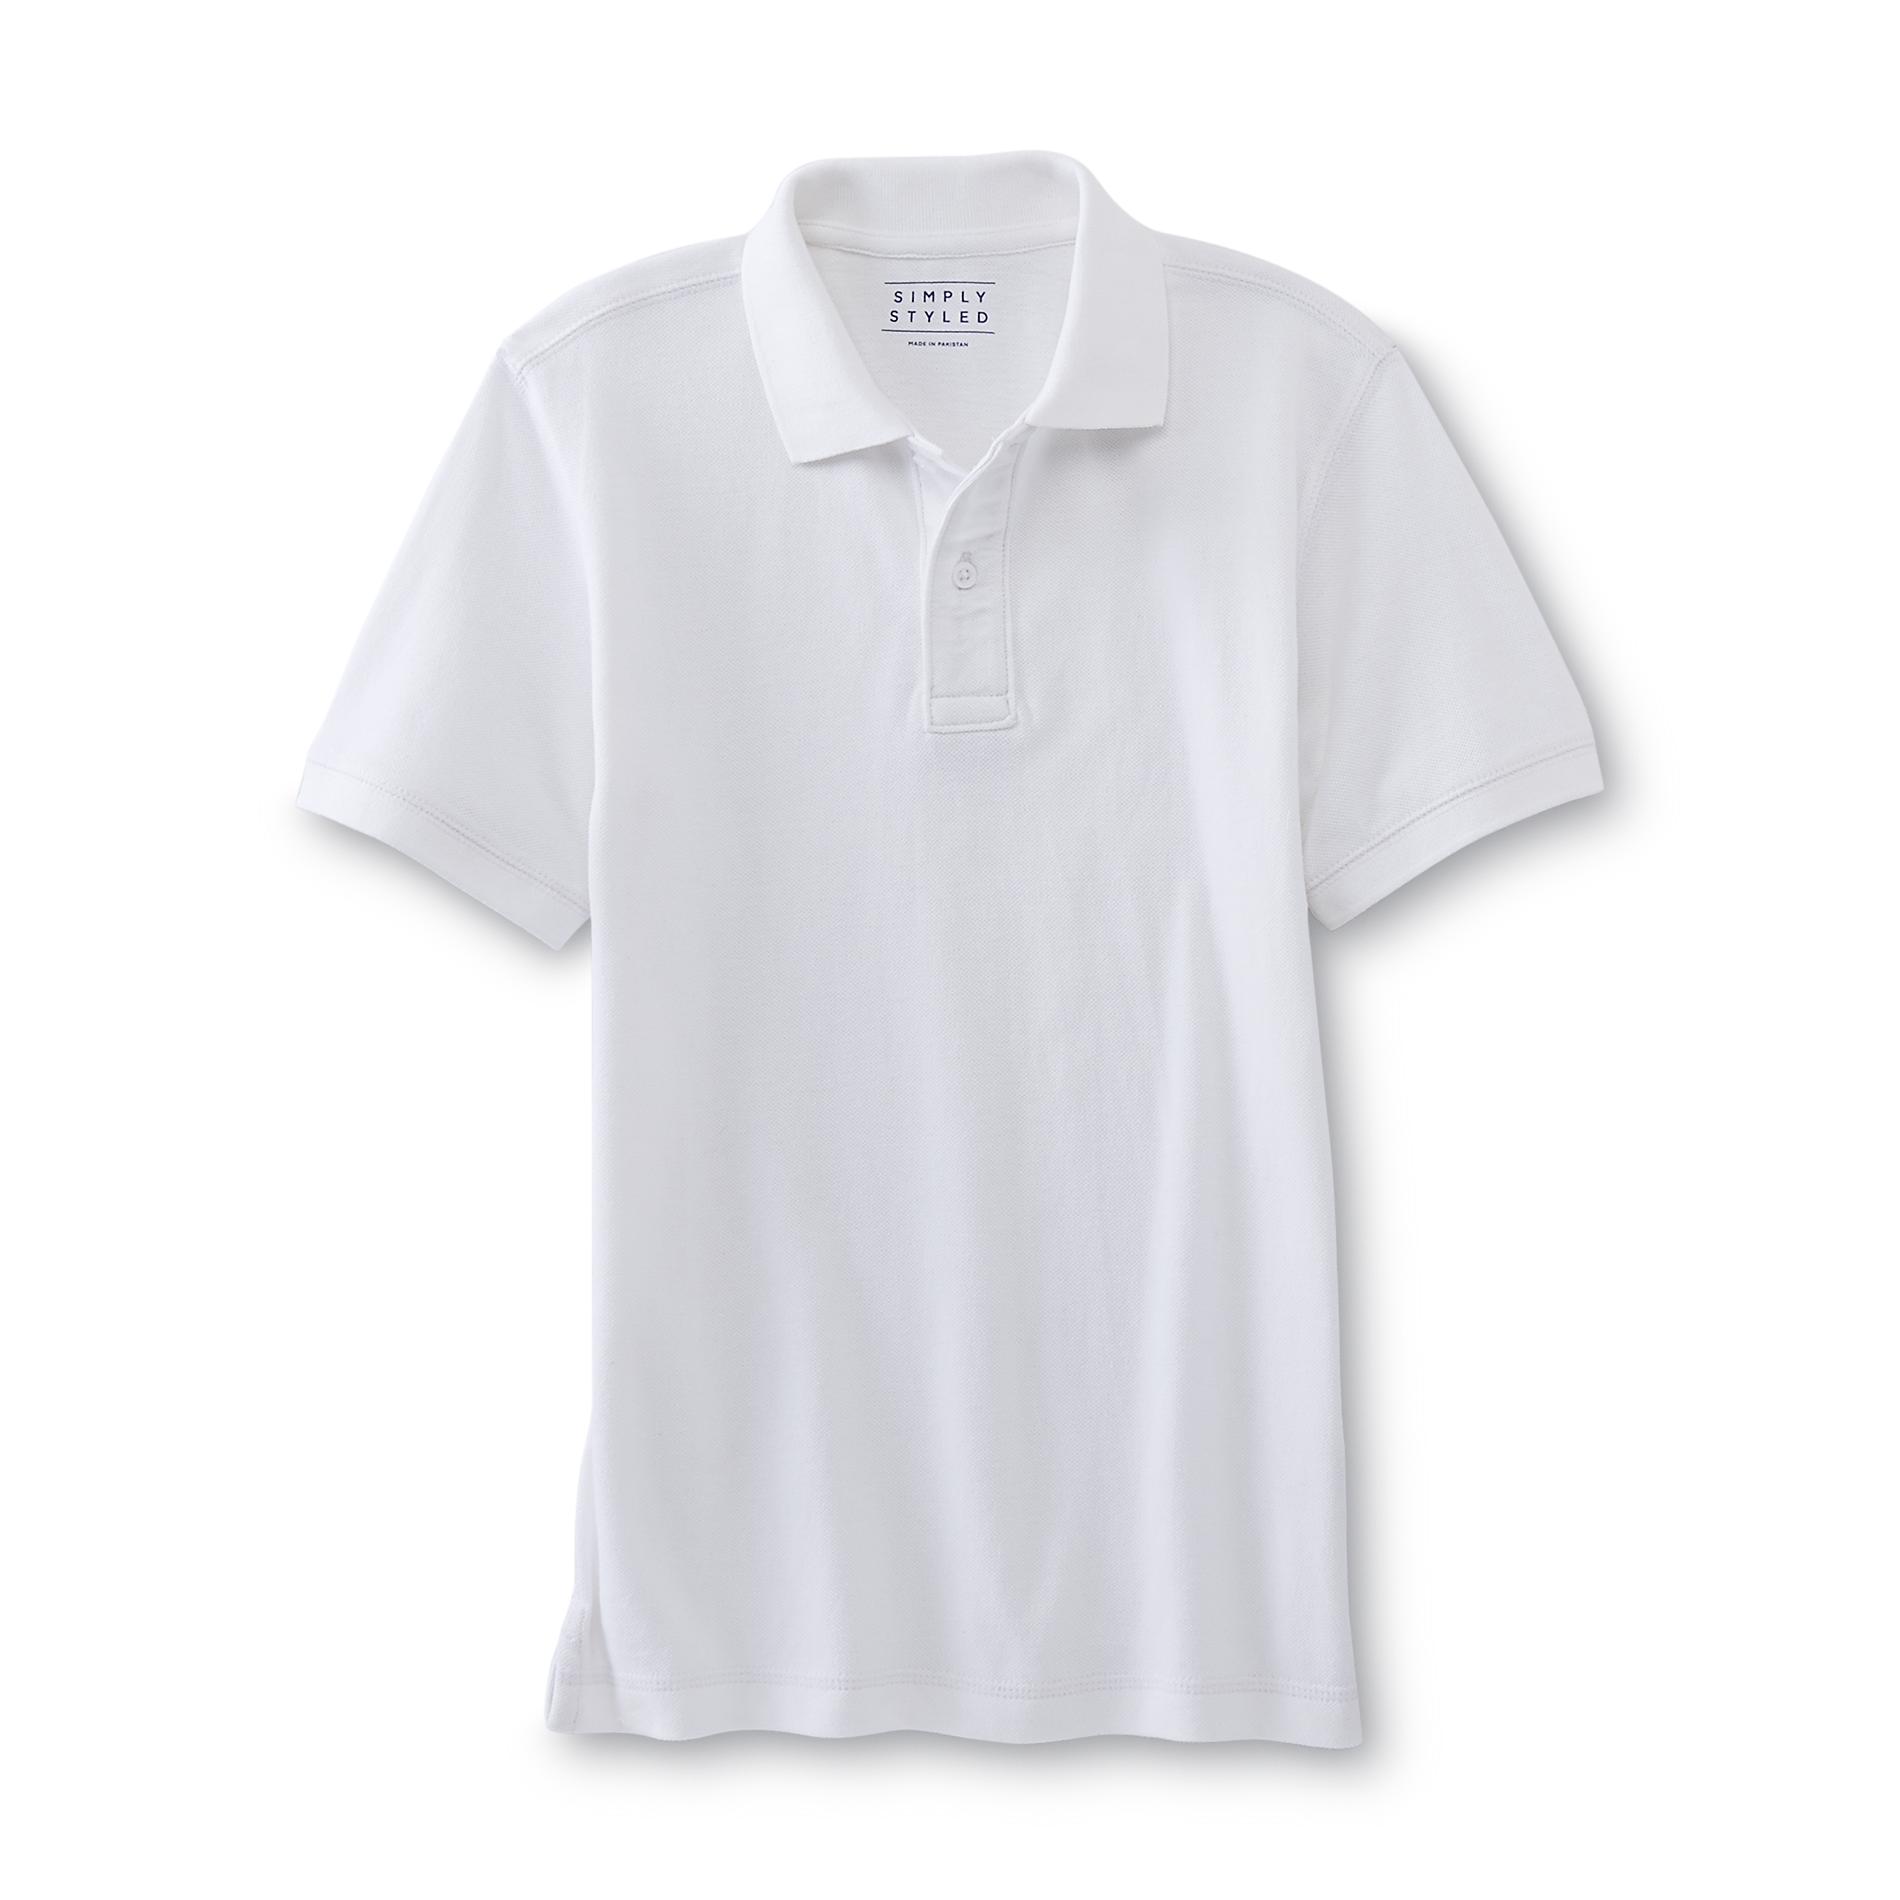 Simply Styled Boys' Polo Shirt